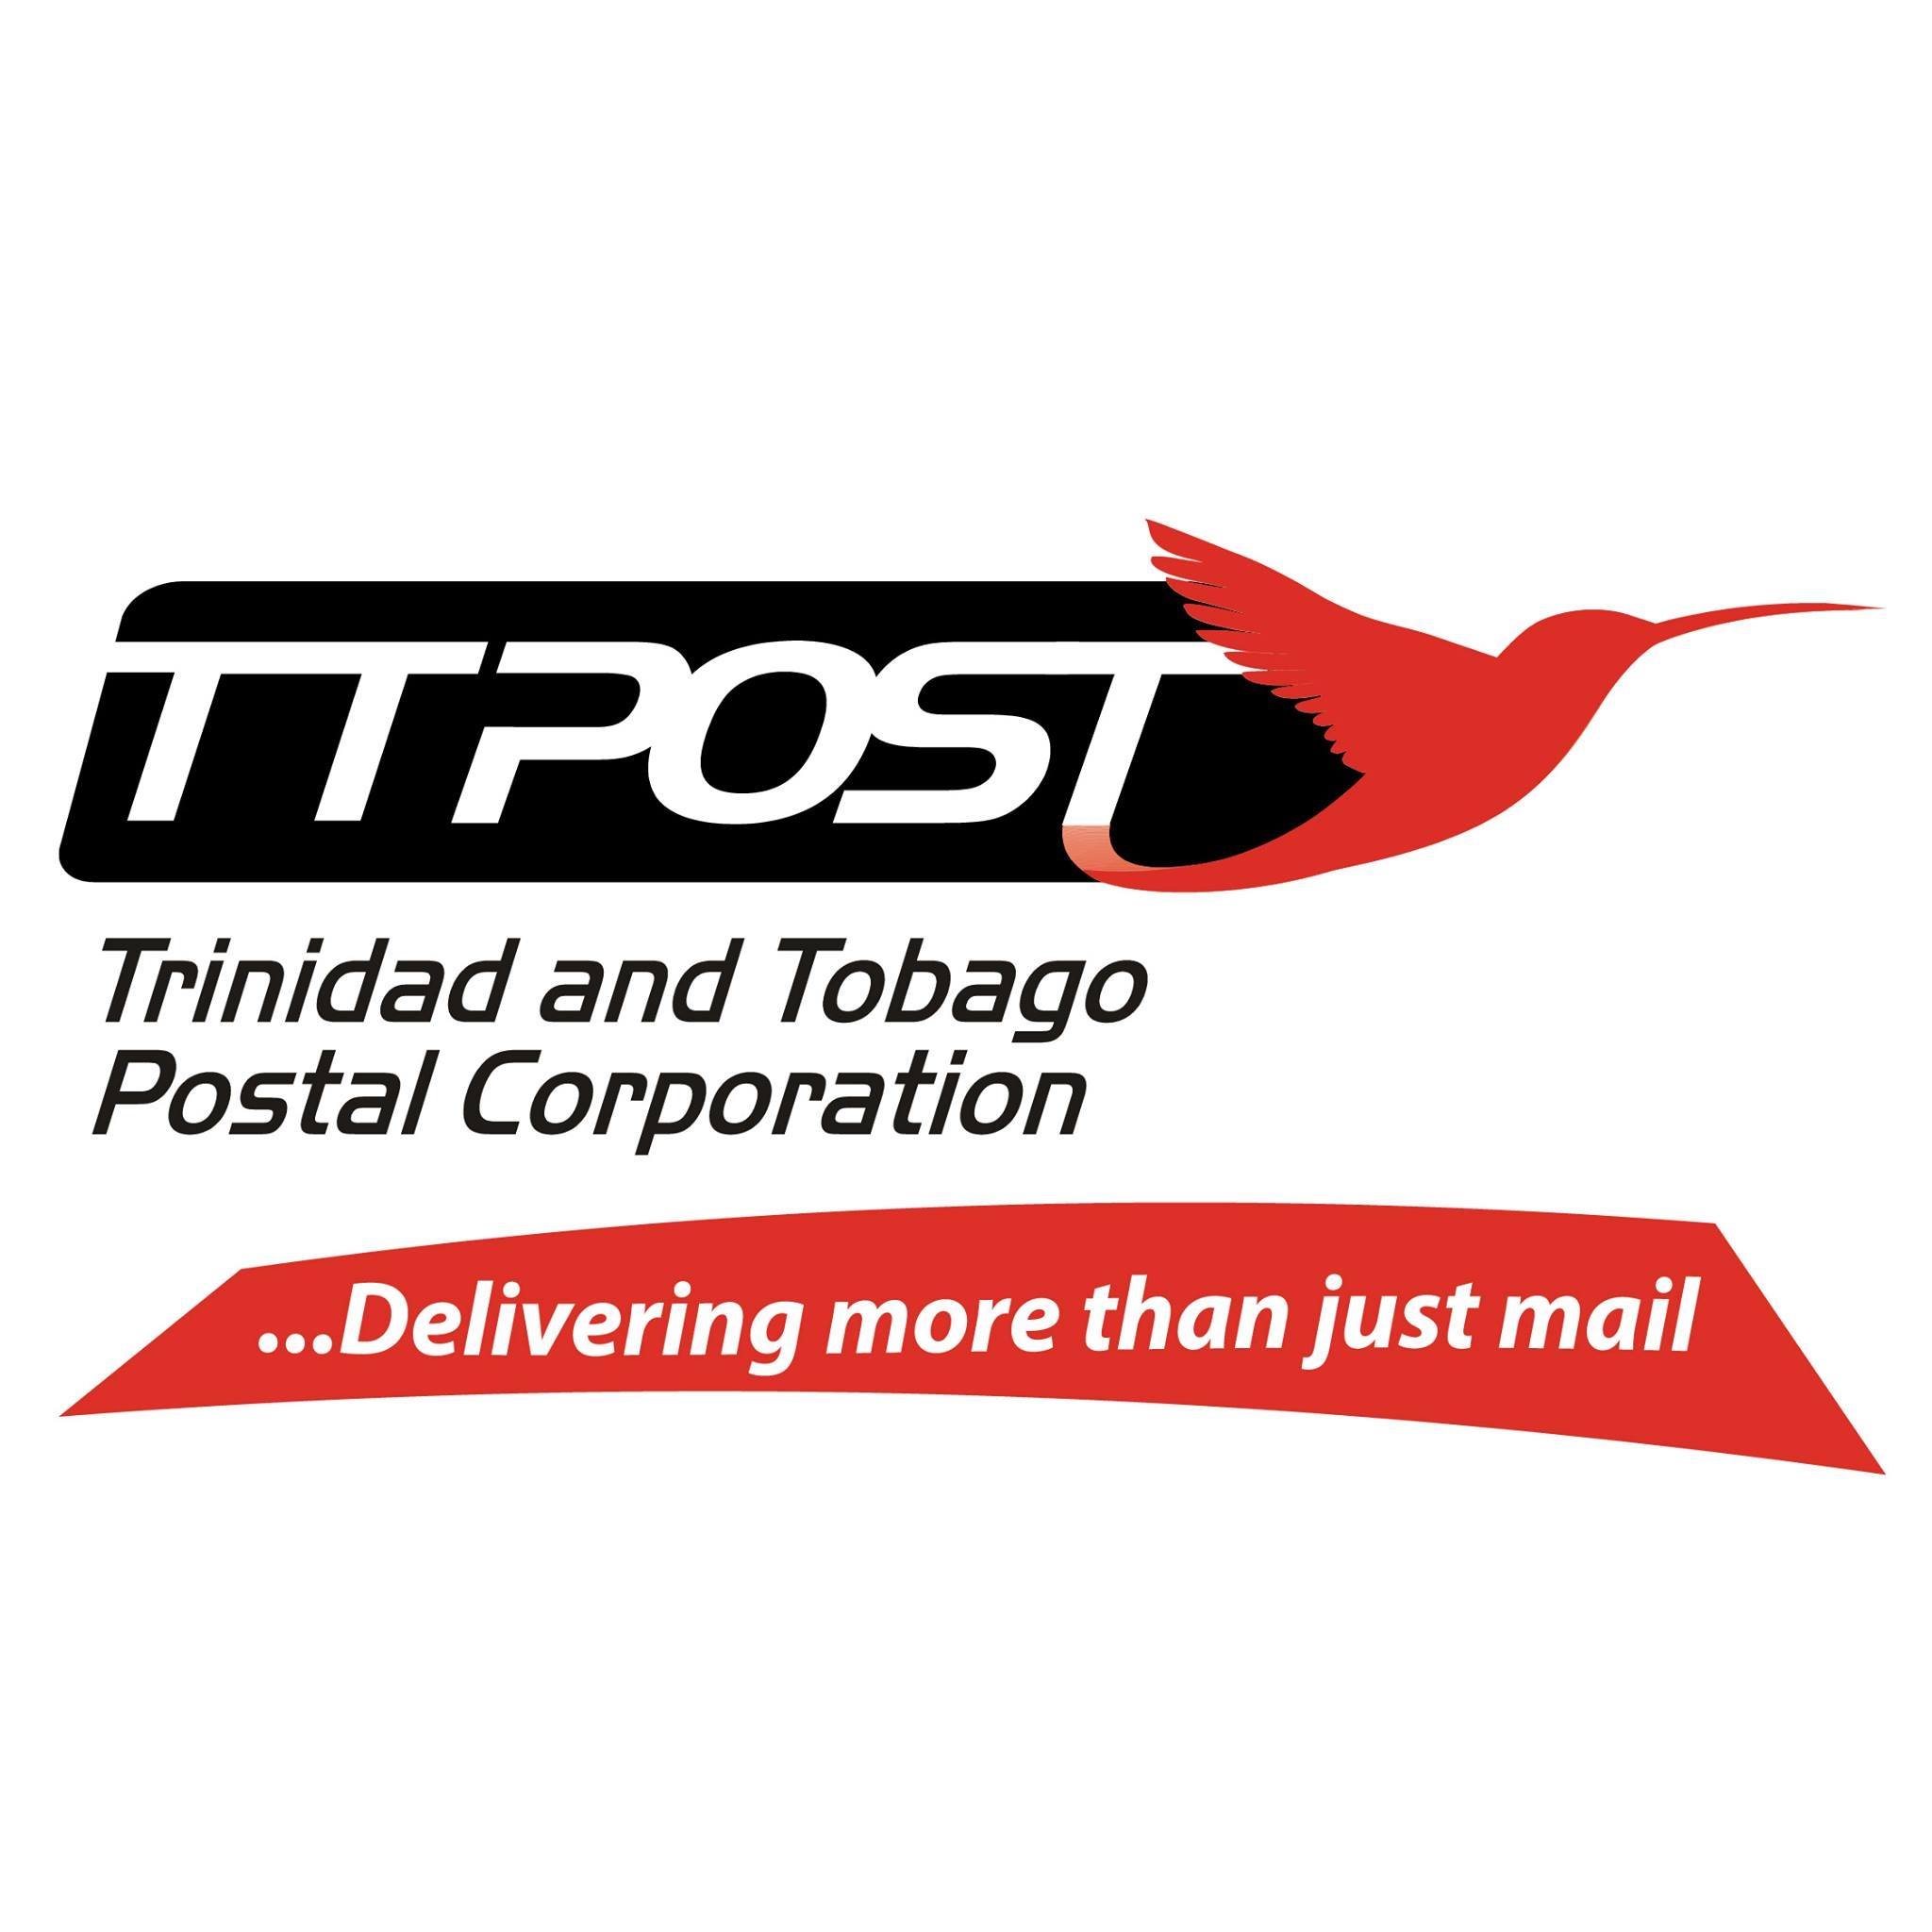 Trinidad and Tobago Postal